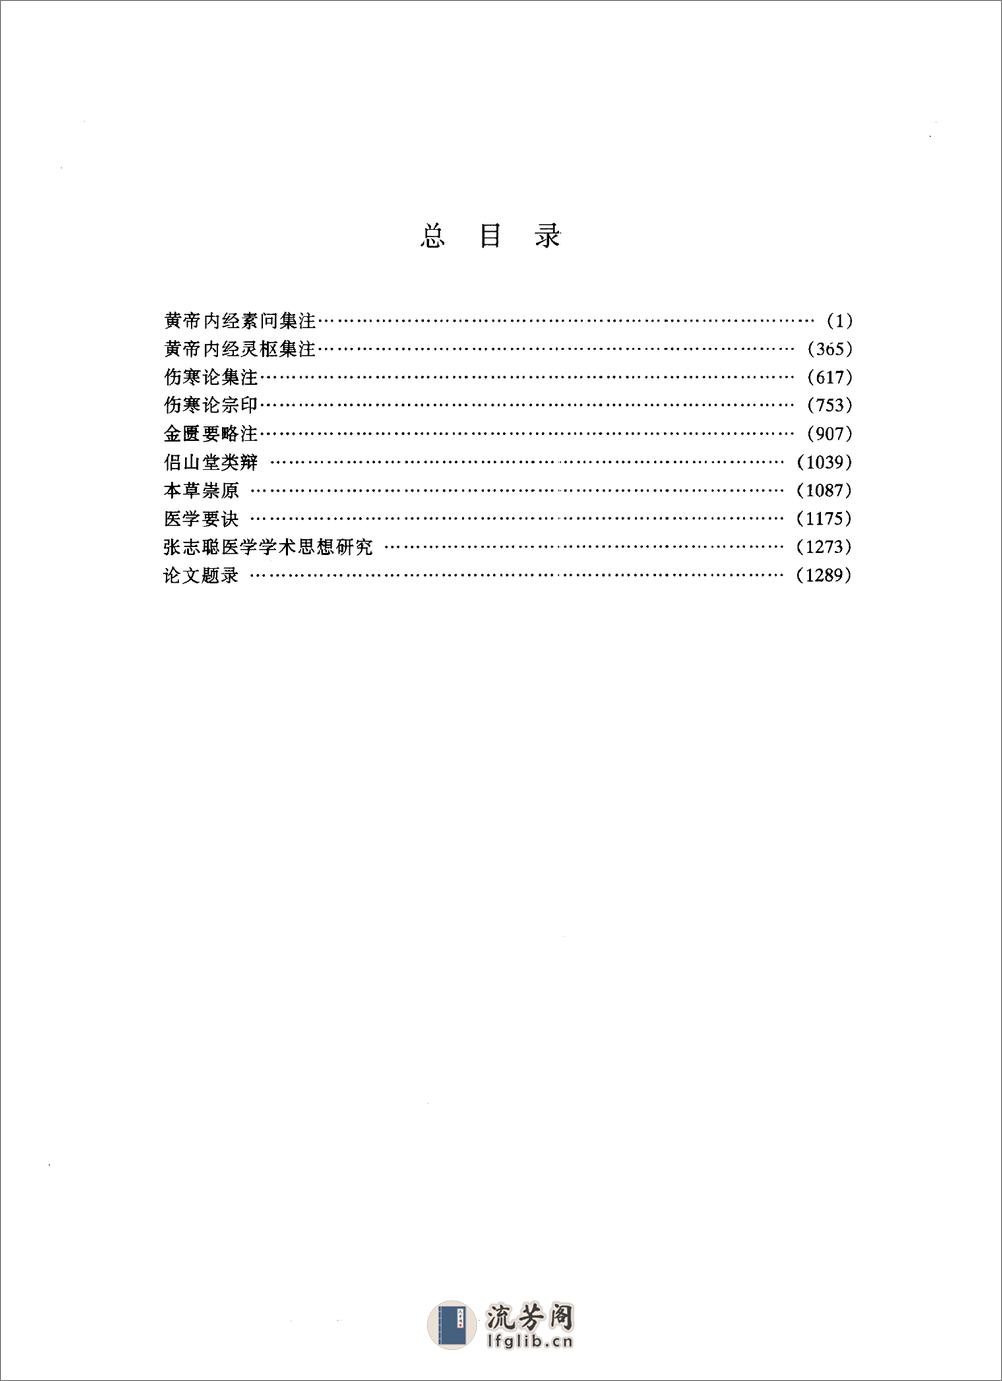 明清名医全书大成++张志聪医学全书 - 第17页预览图